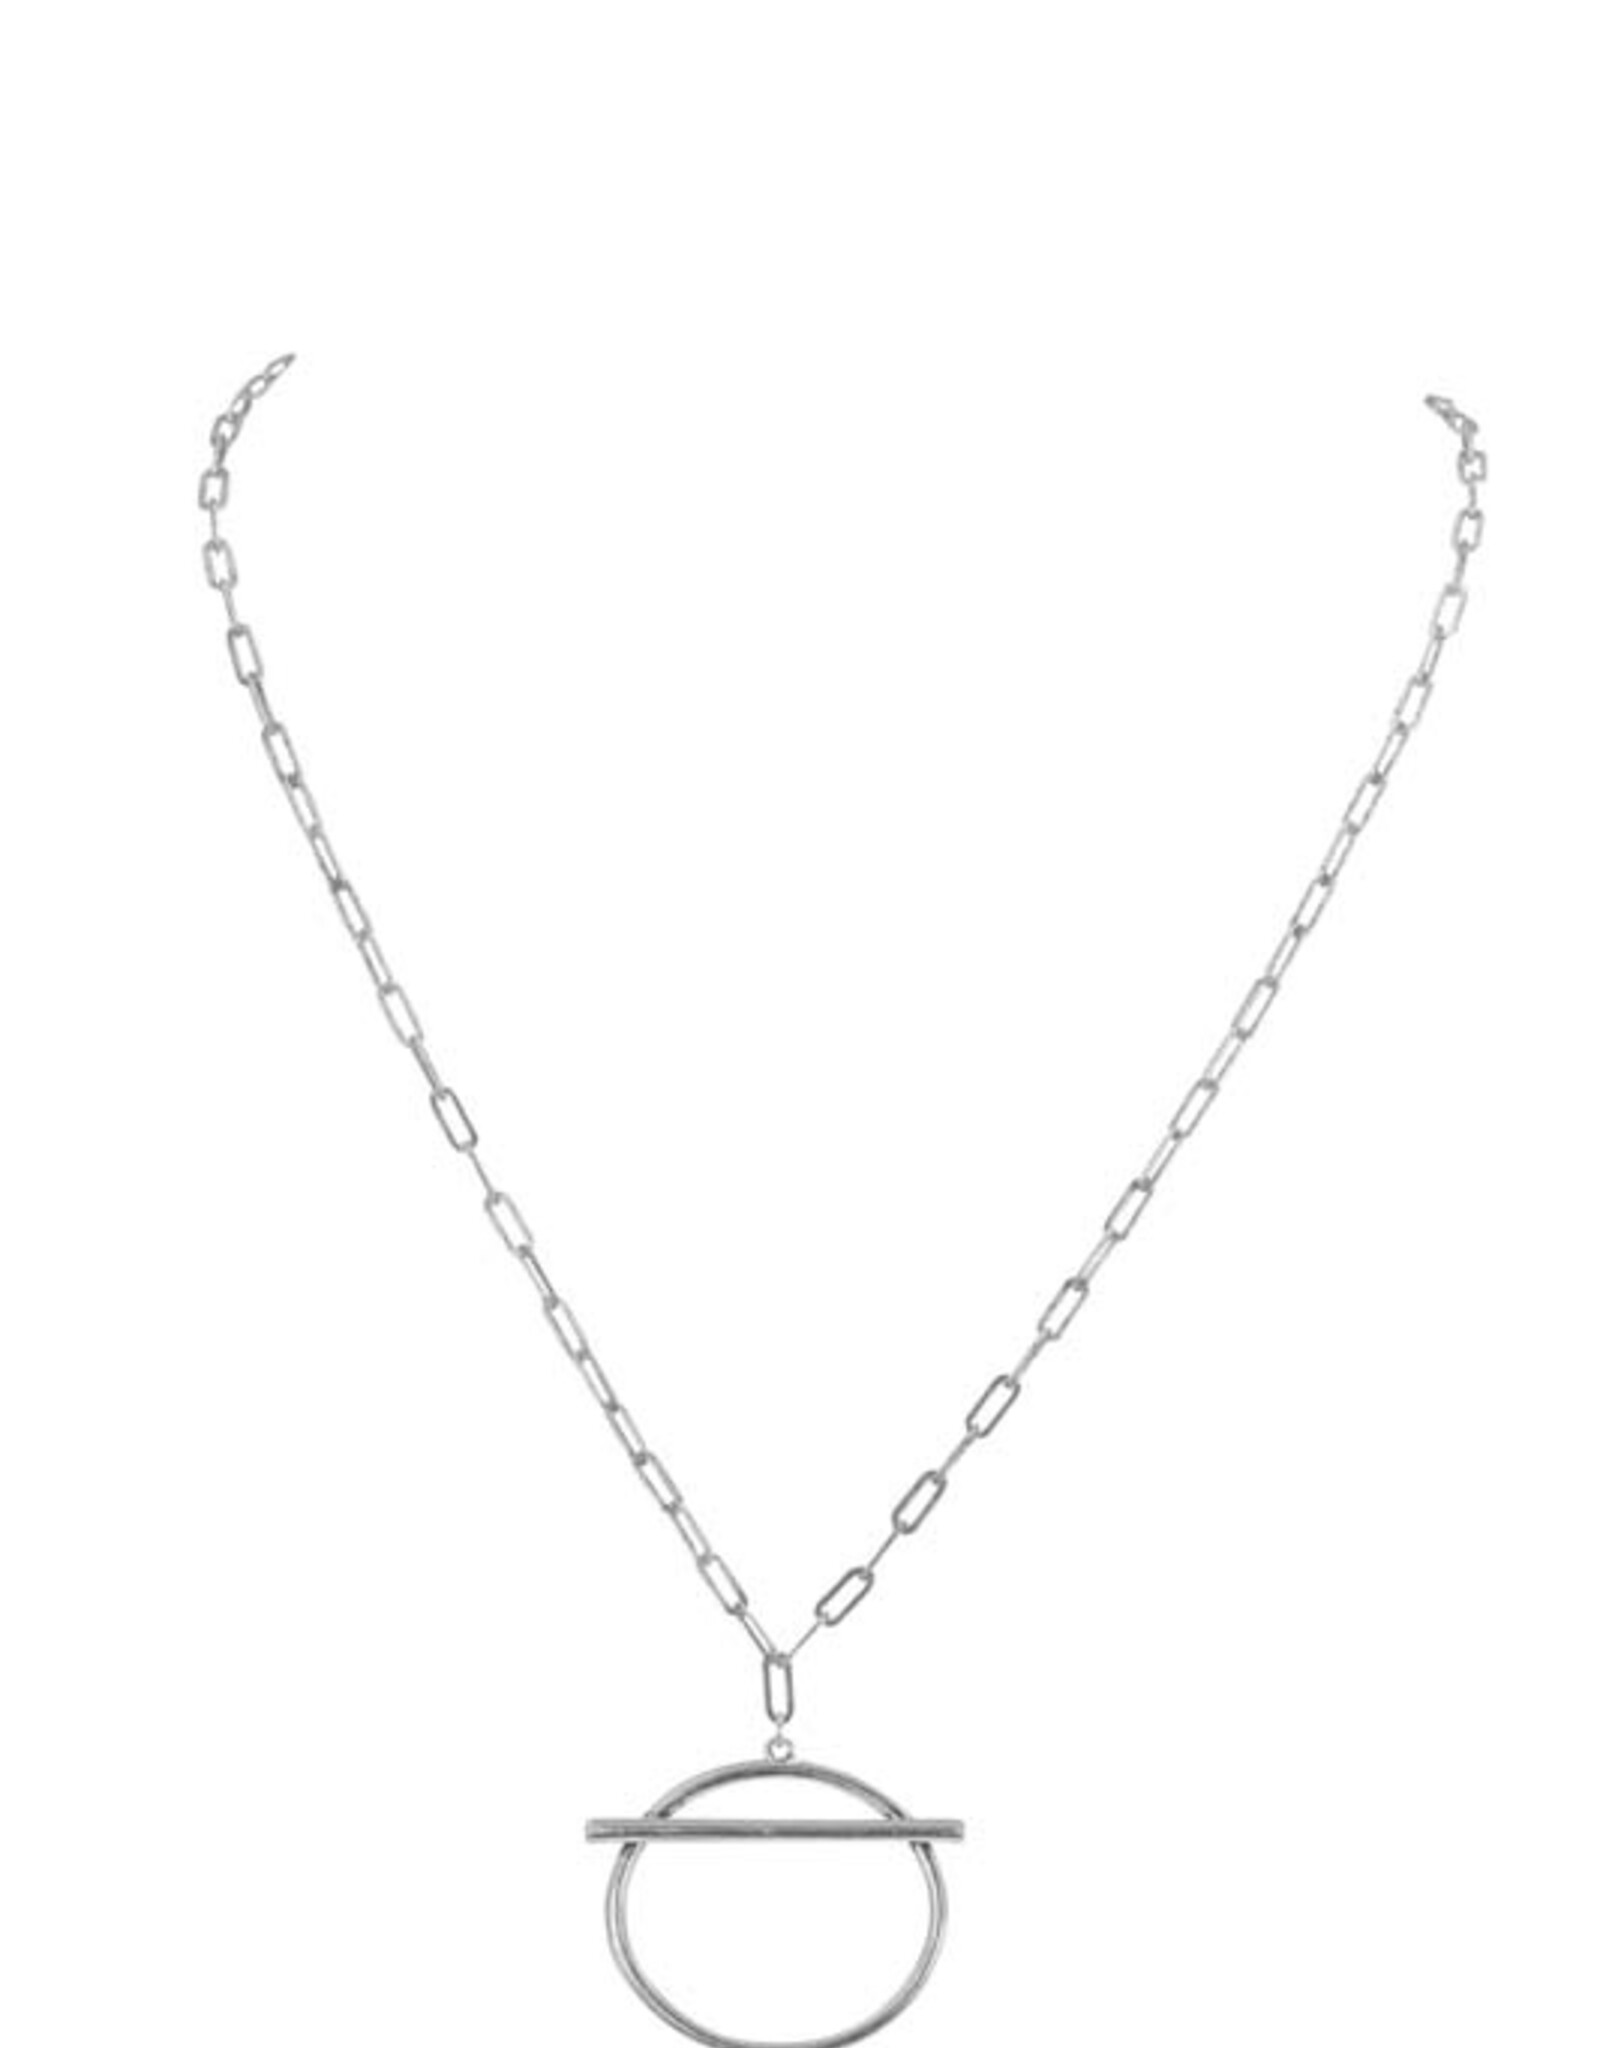 Merx Inc. Fashion Necklace shiny Antique silver 45cm+7cm